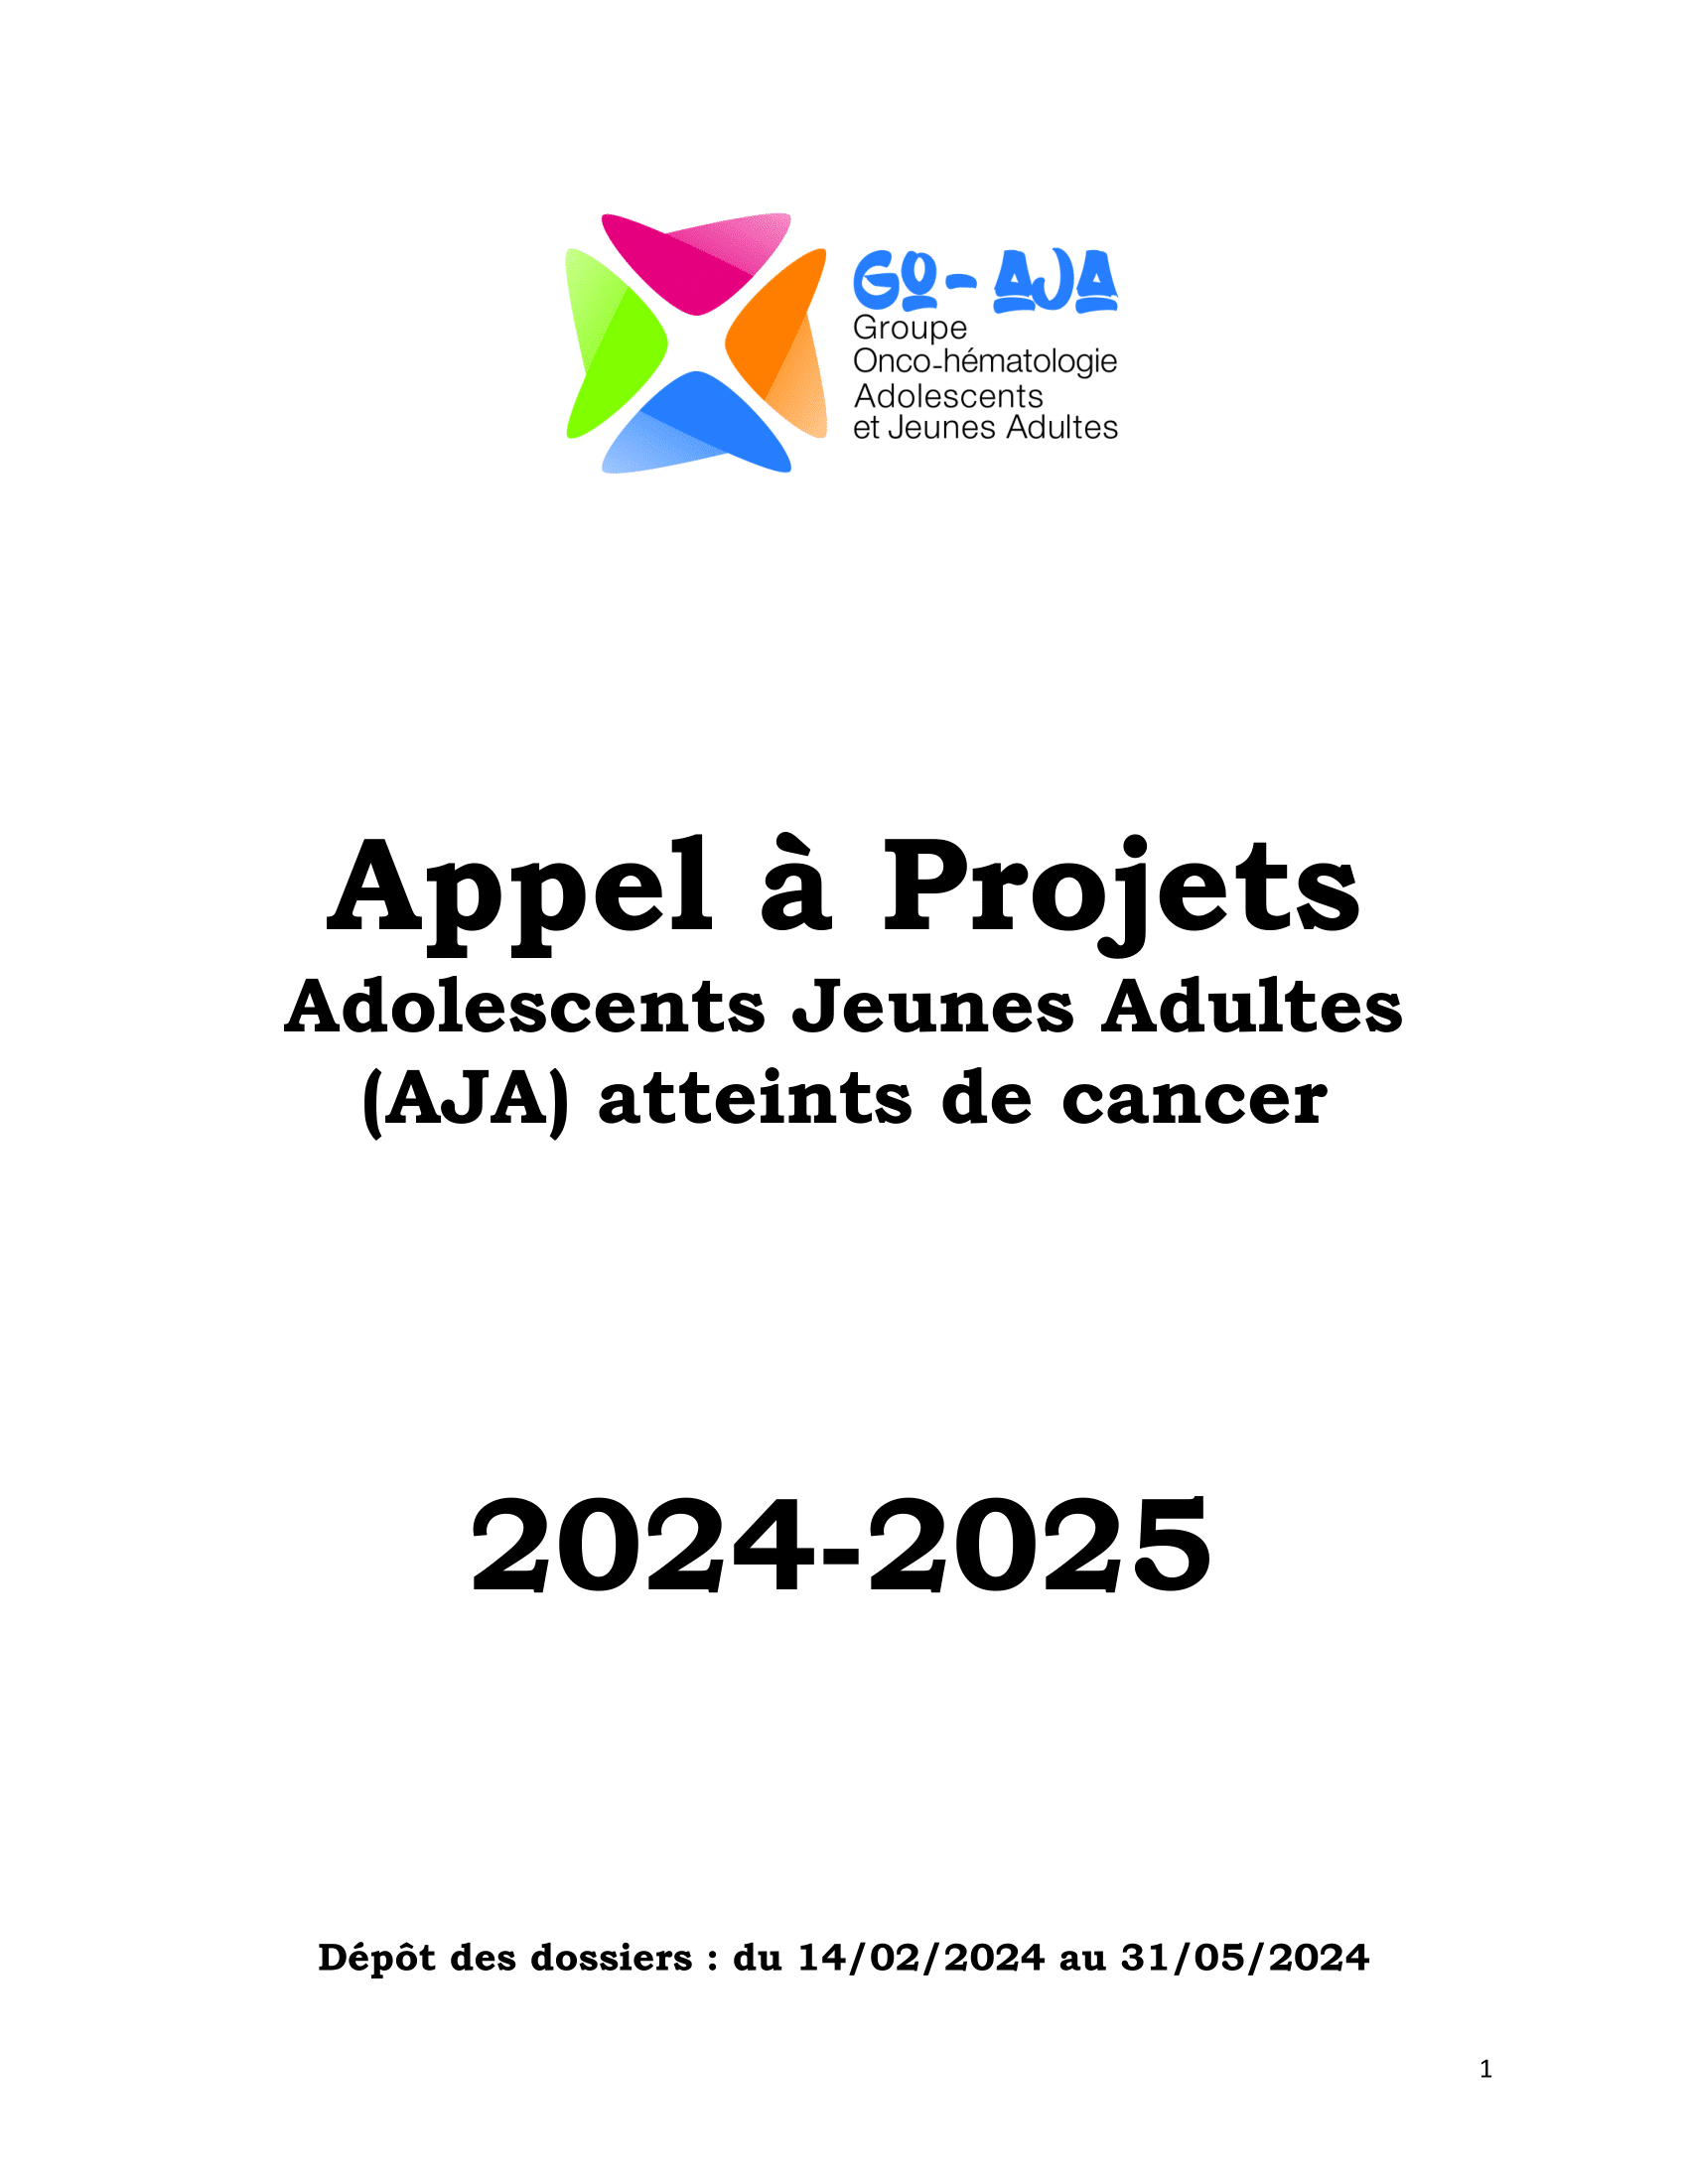 AAP-GOAJA_2024-2025-01